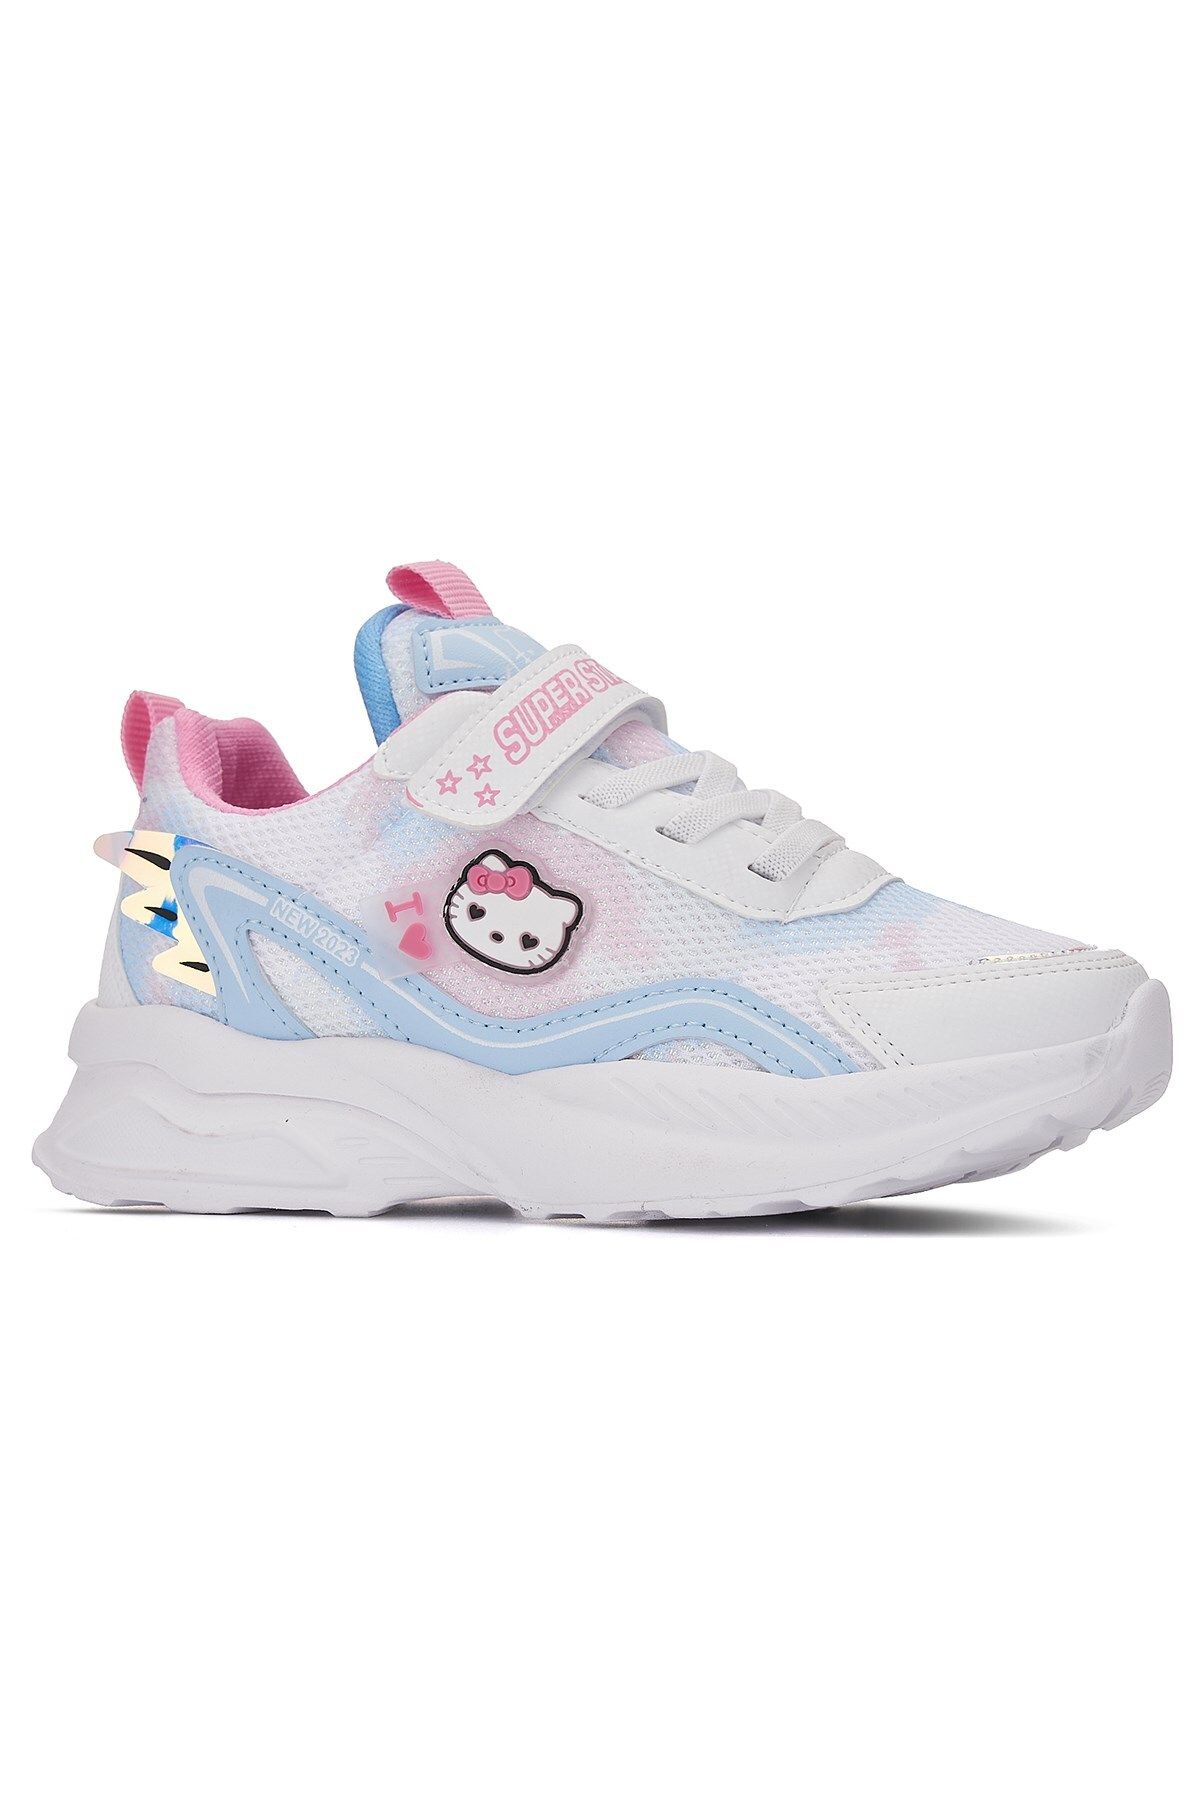 İmerShoes Günlük Kız Çocuk Sneaker Lastik Bağcıklı Hologram Cırtlı Hello Kitty Nefes Alabilen Ayakkabı 2014